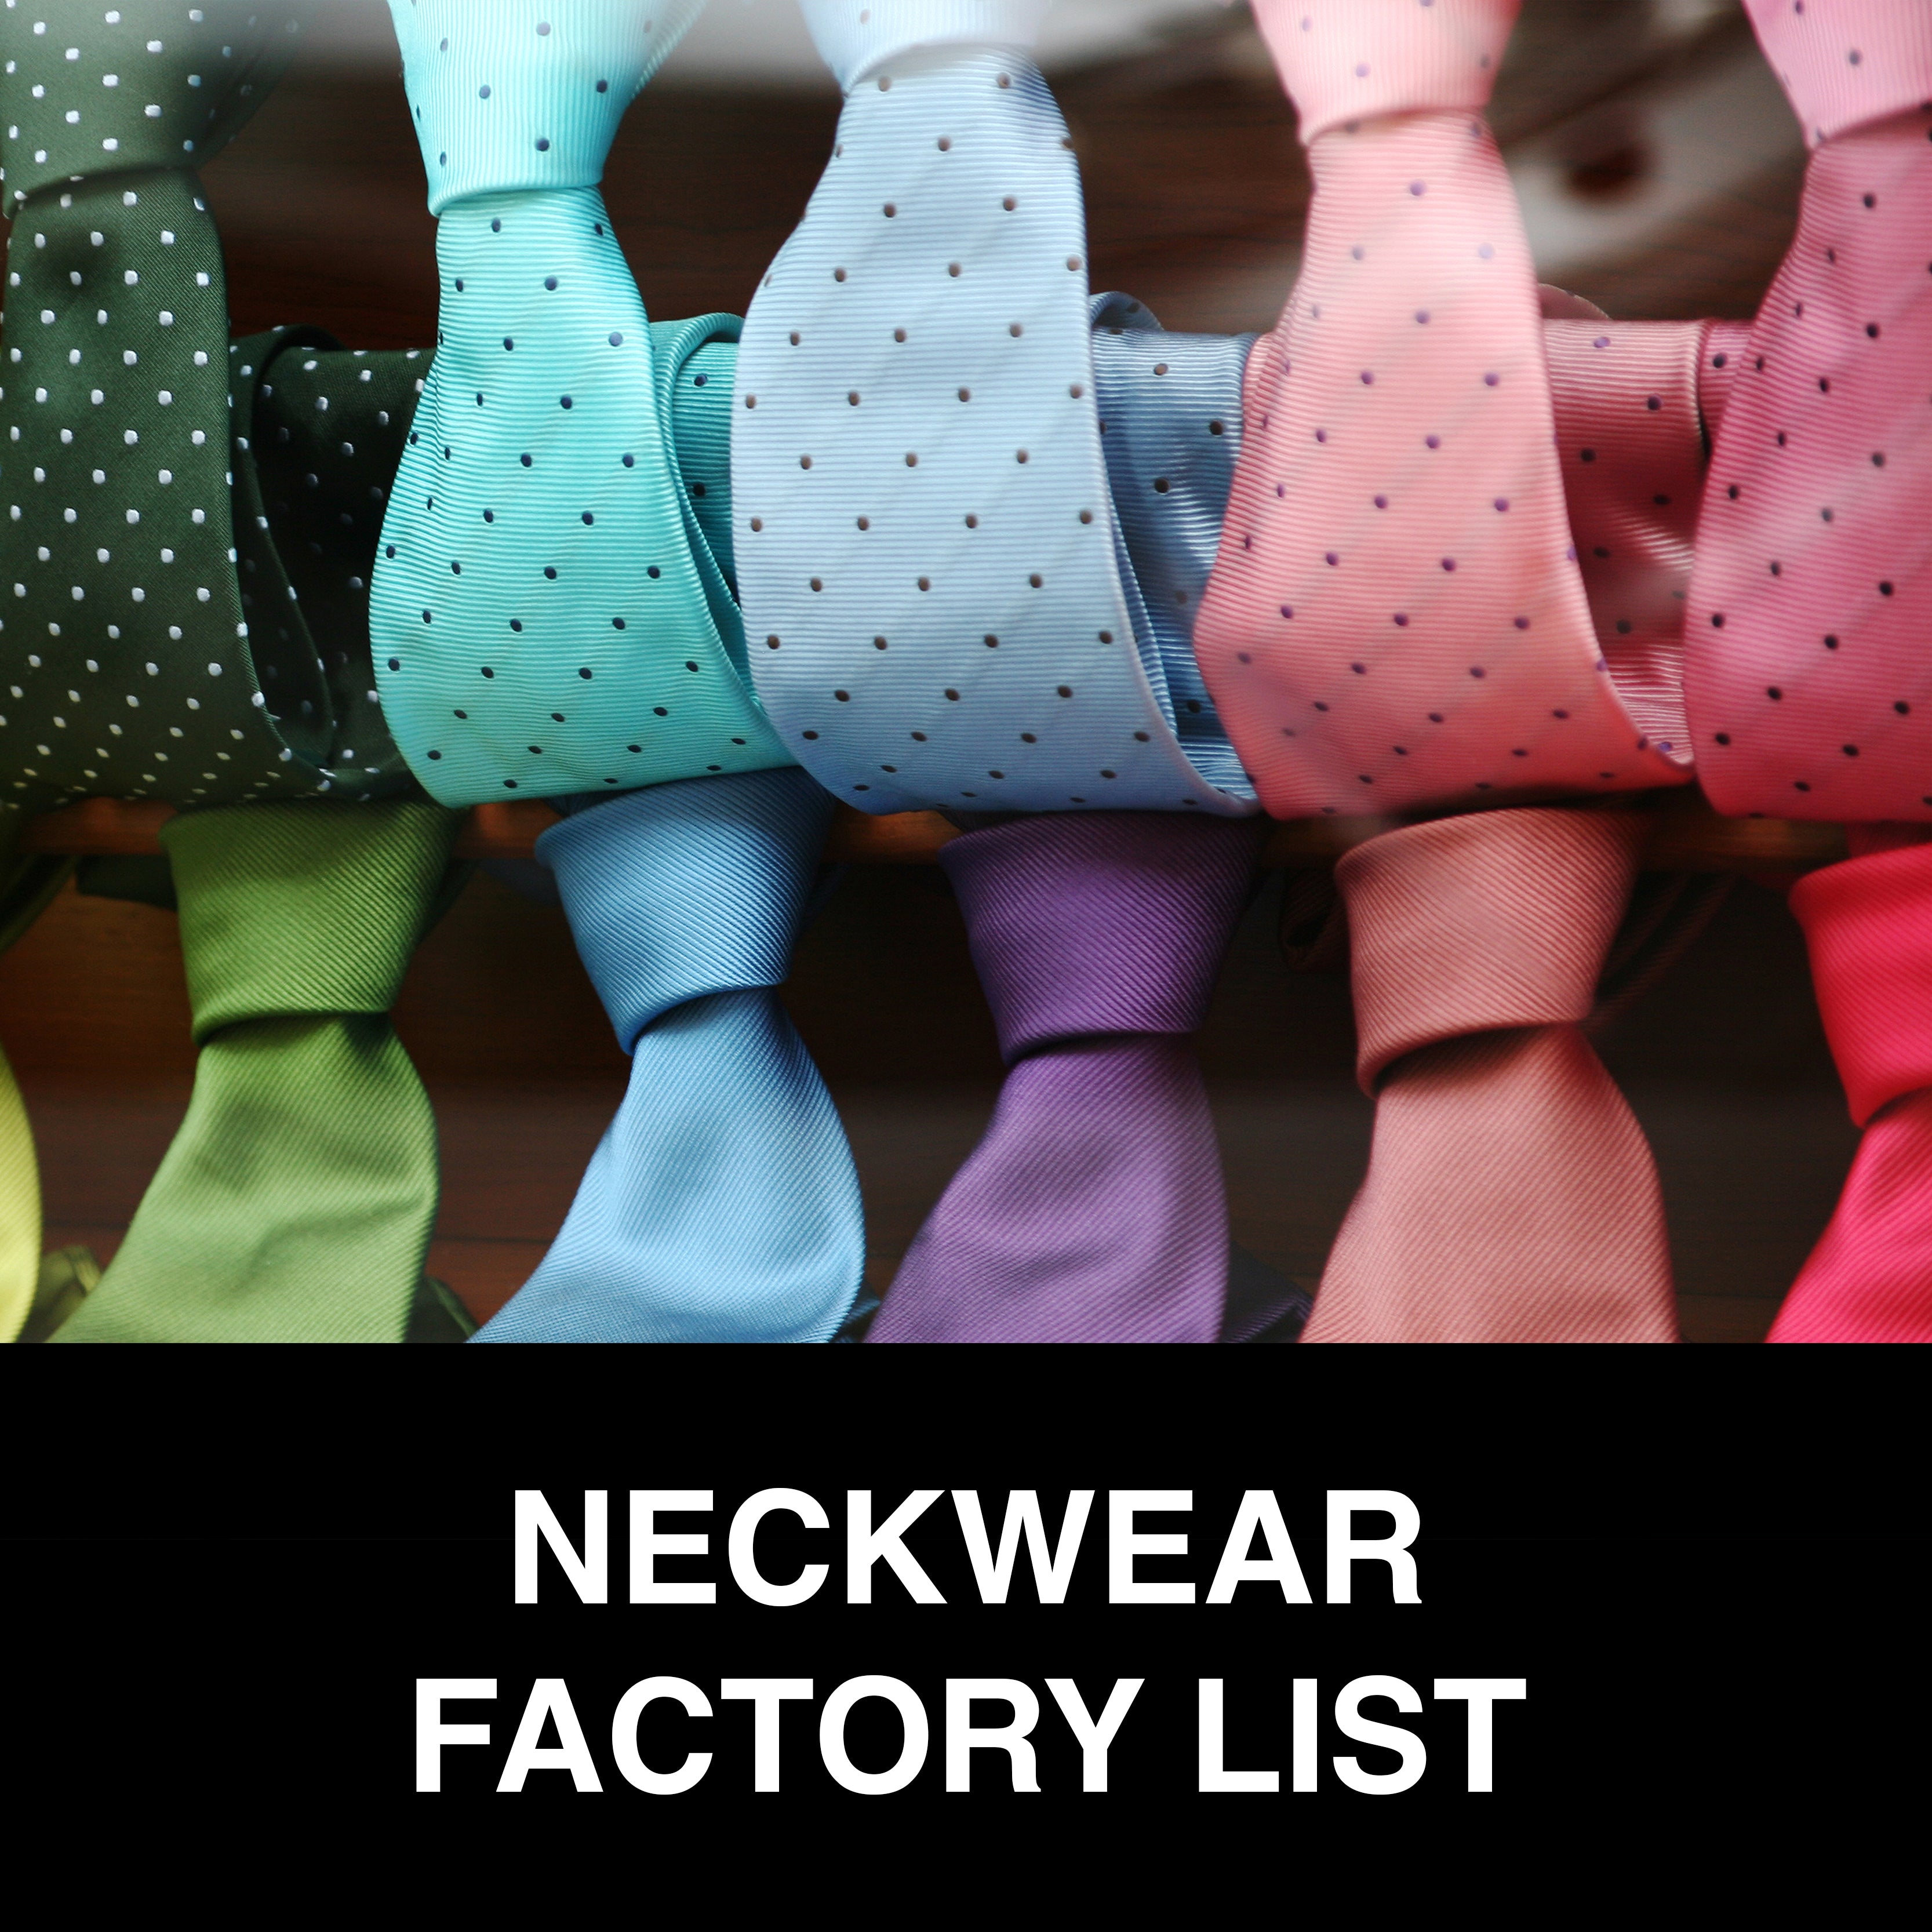 Neckwear Factory List